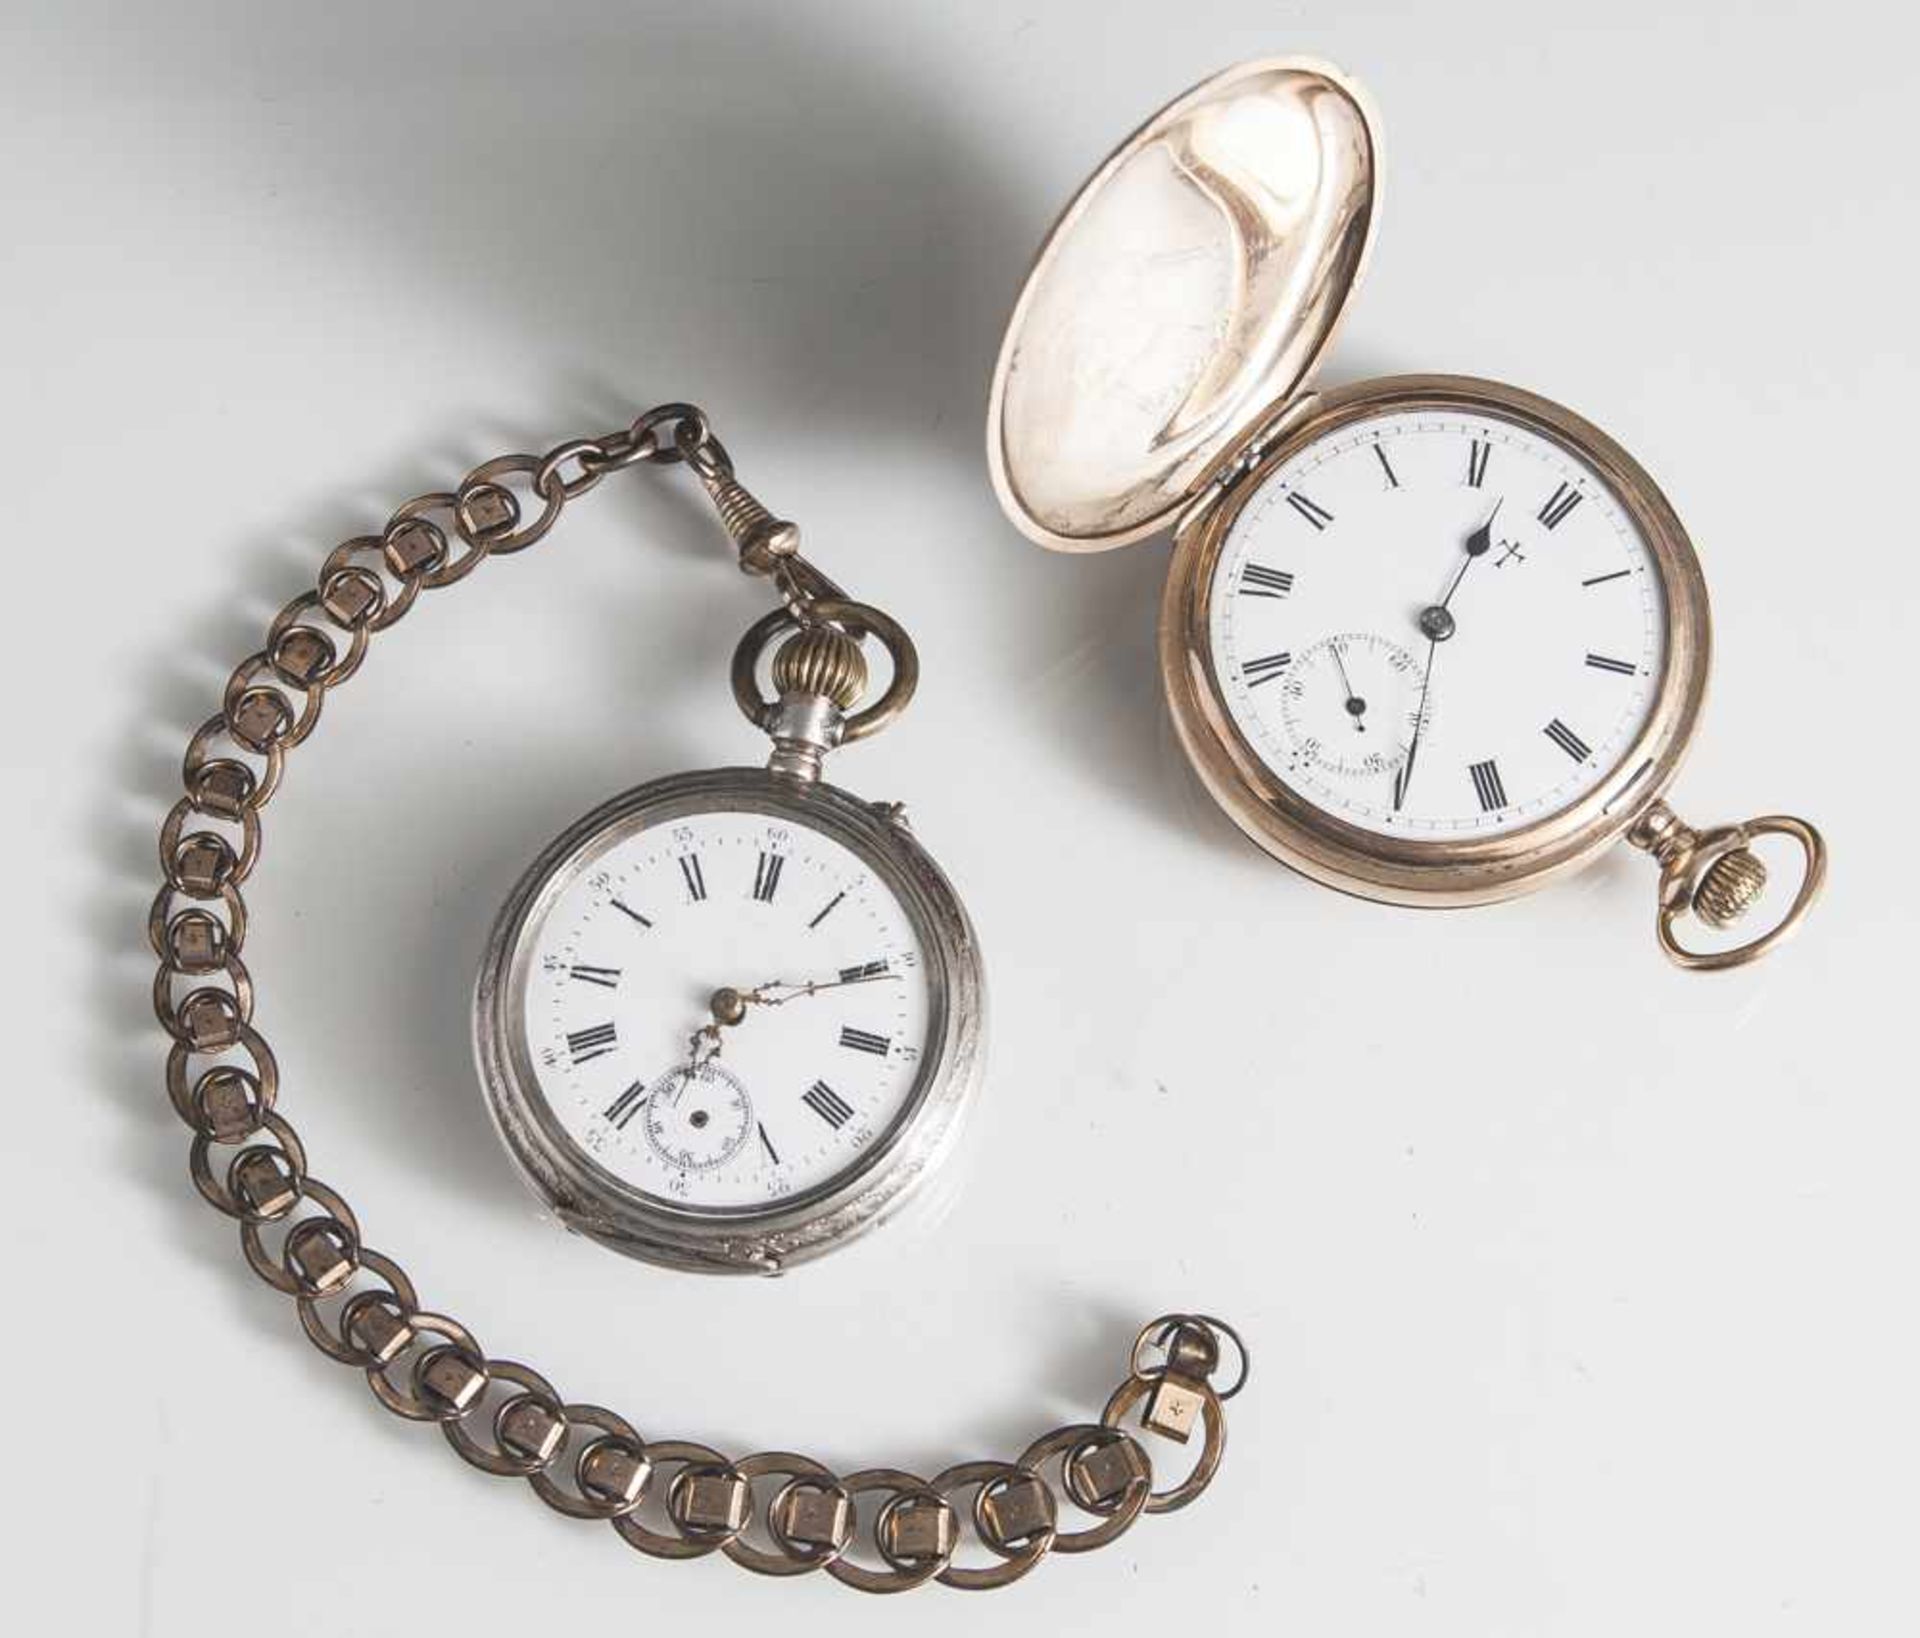 2 Taschenuhren, um 1900, a) Sprungdeckel-Taschenuhr, Walzgold, Ingersoll, Trenton, USA, weißes